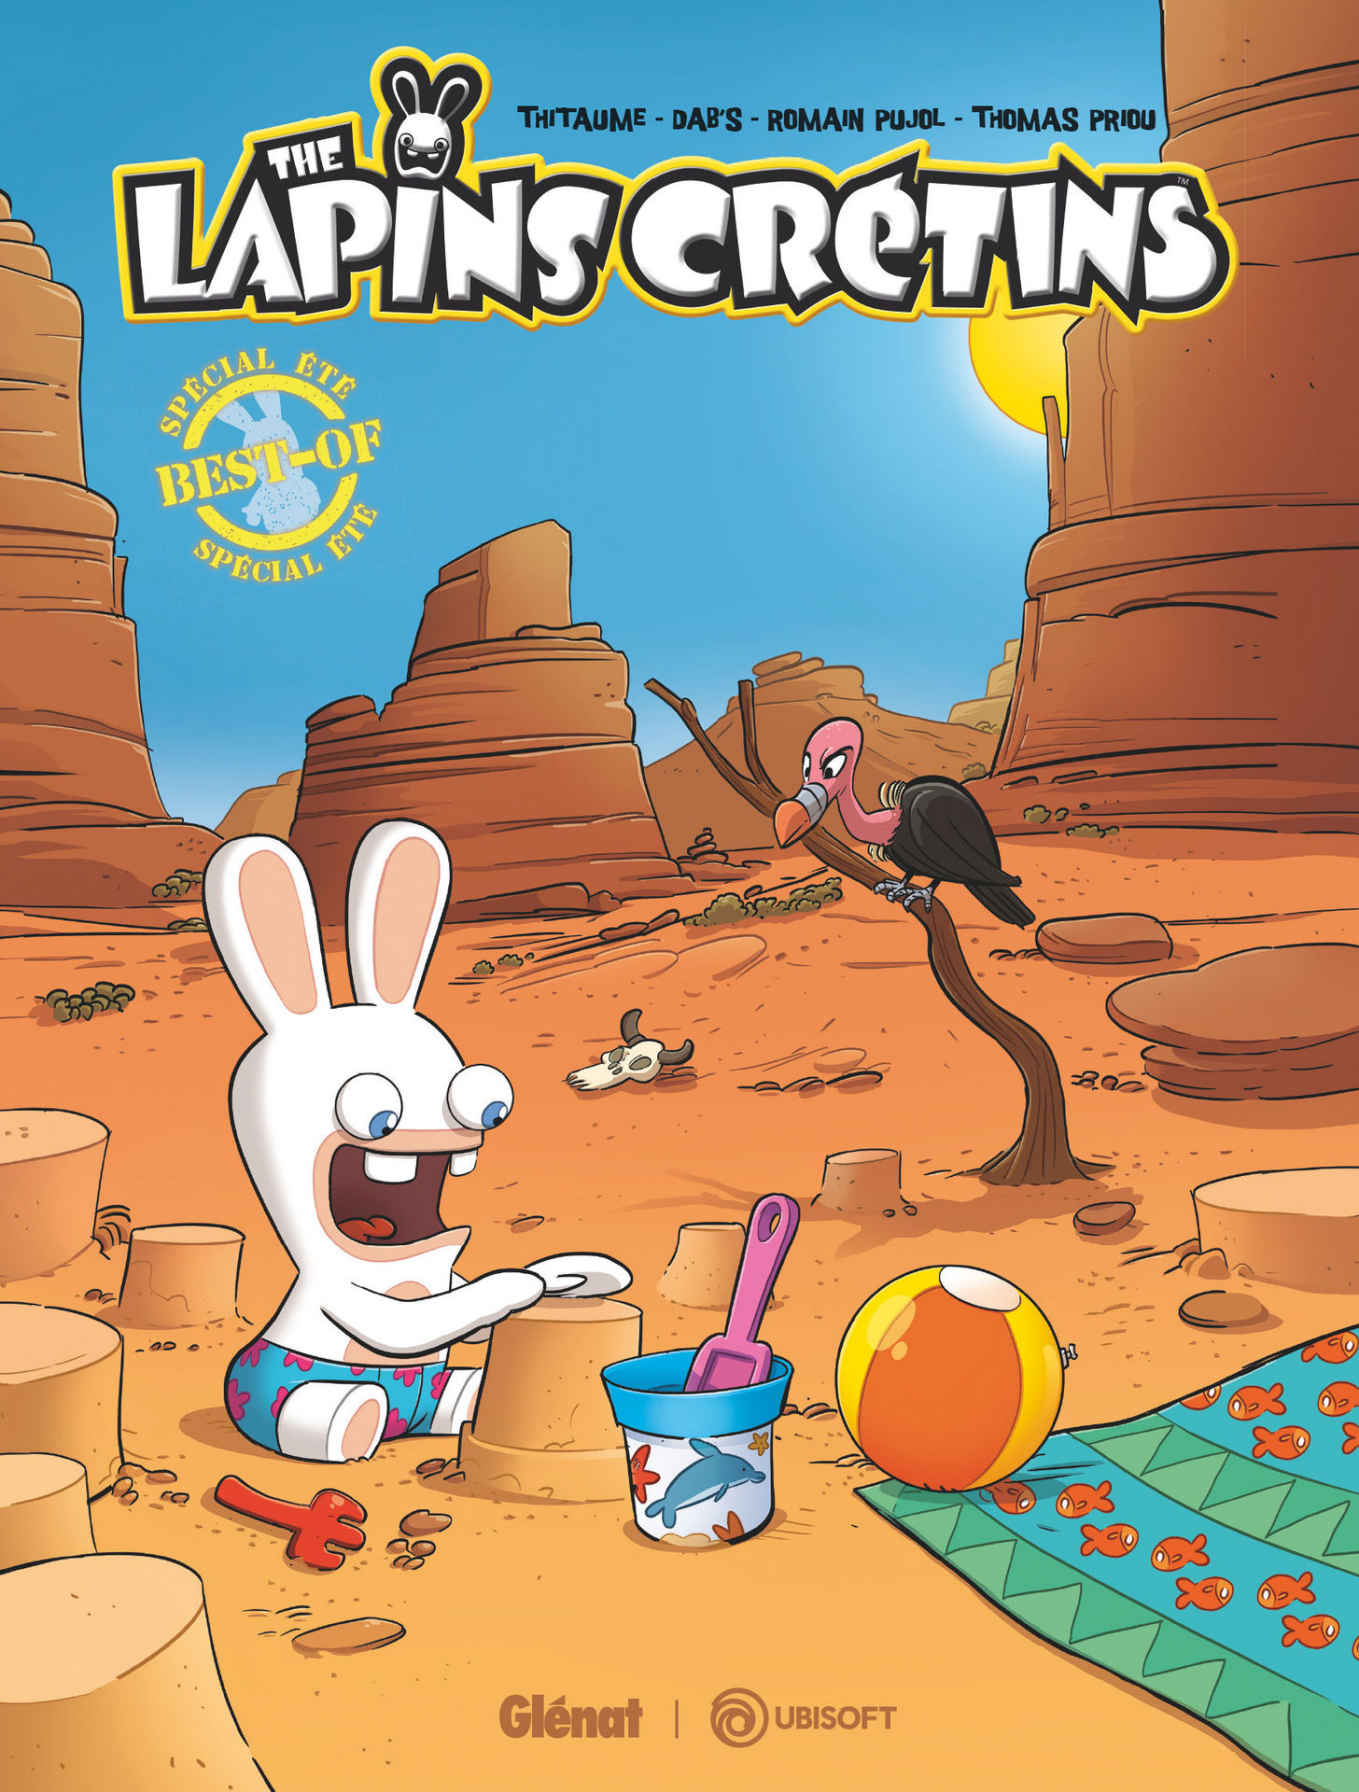 Carte The Lapins Crétins - Best of Spécial été Romain Pujol